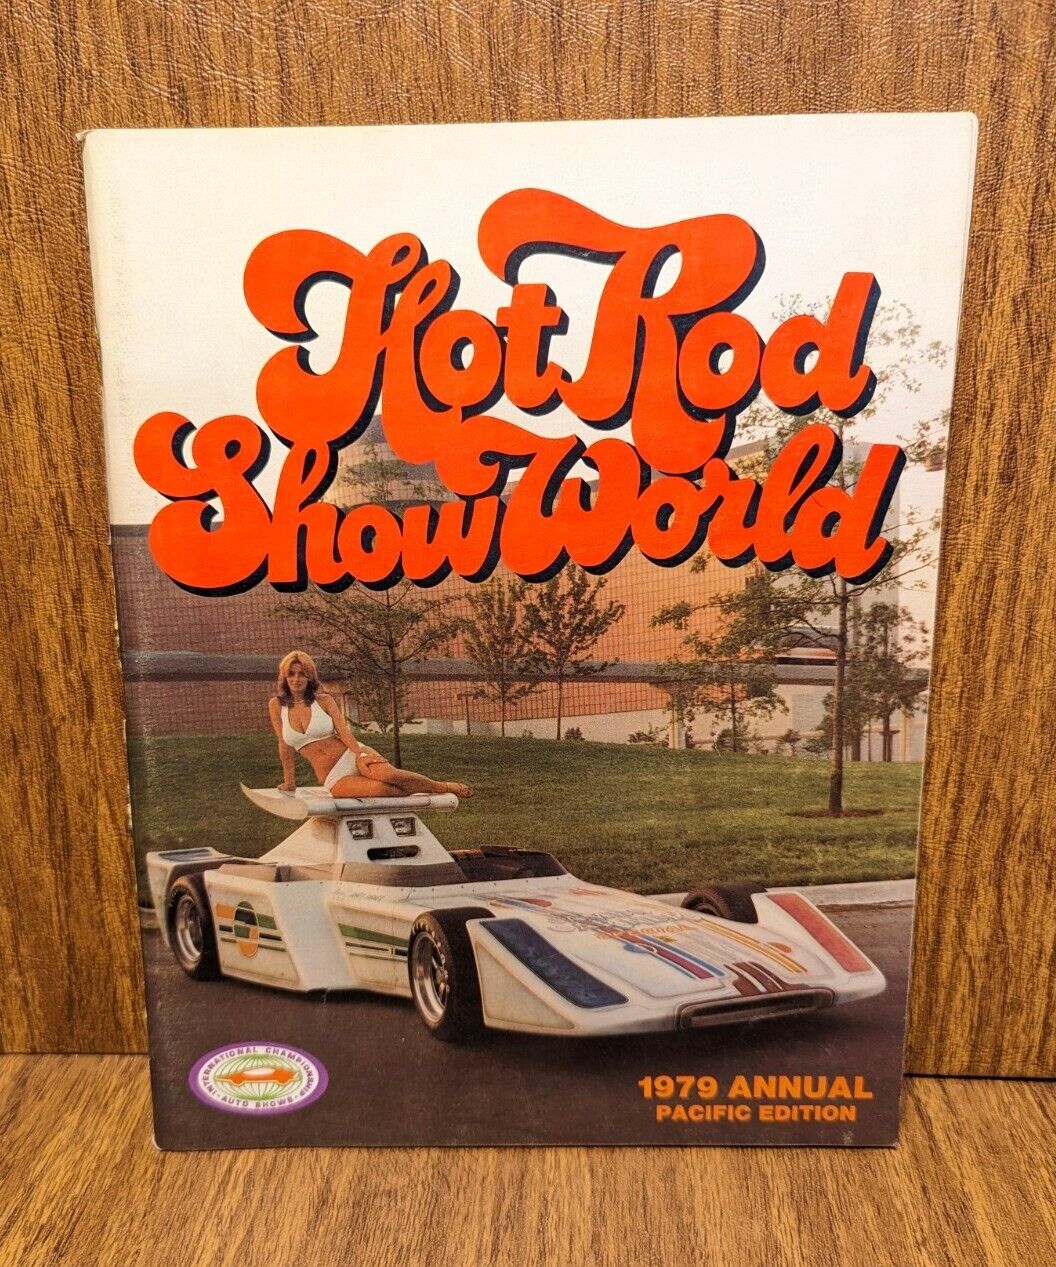 HOT ROD SHOW WORLD 1979 Annual ISCA Edition - Farrah Fawcett